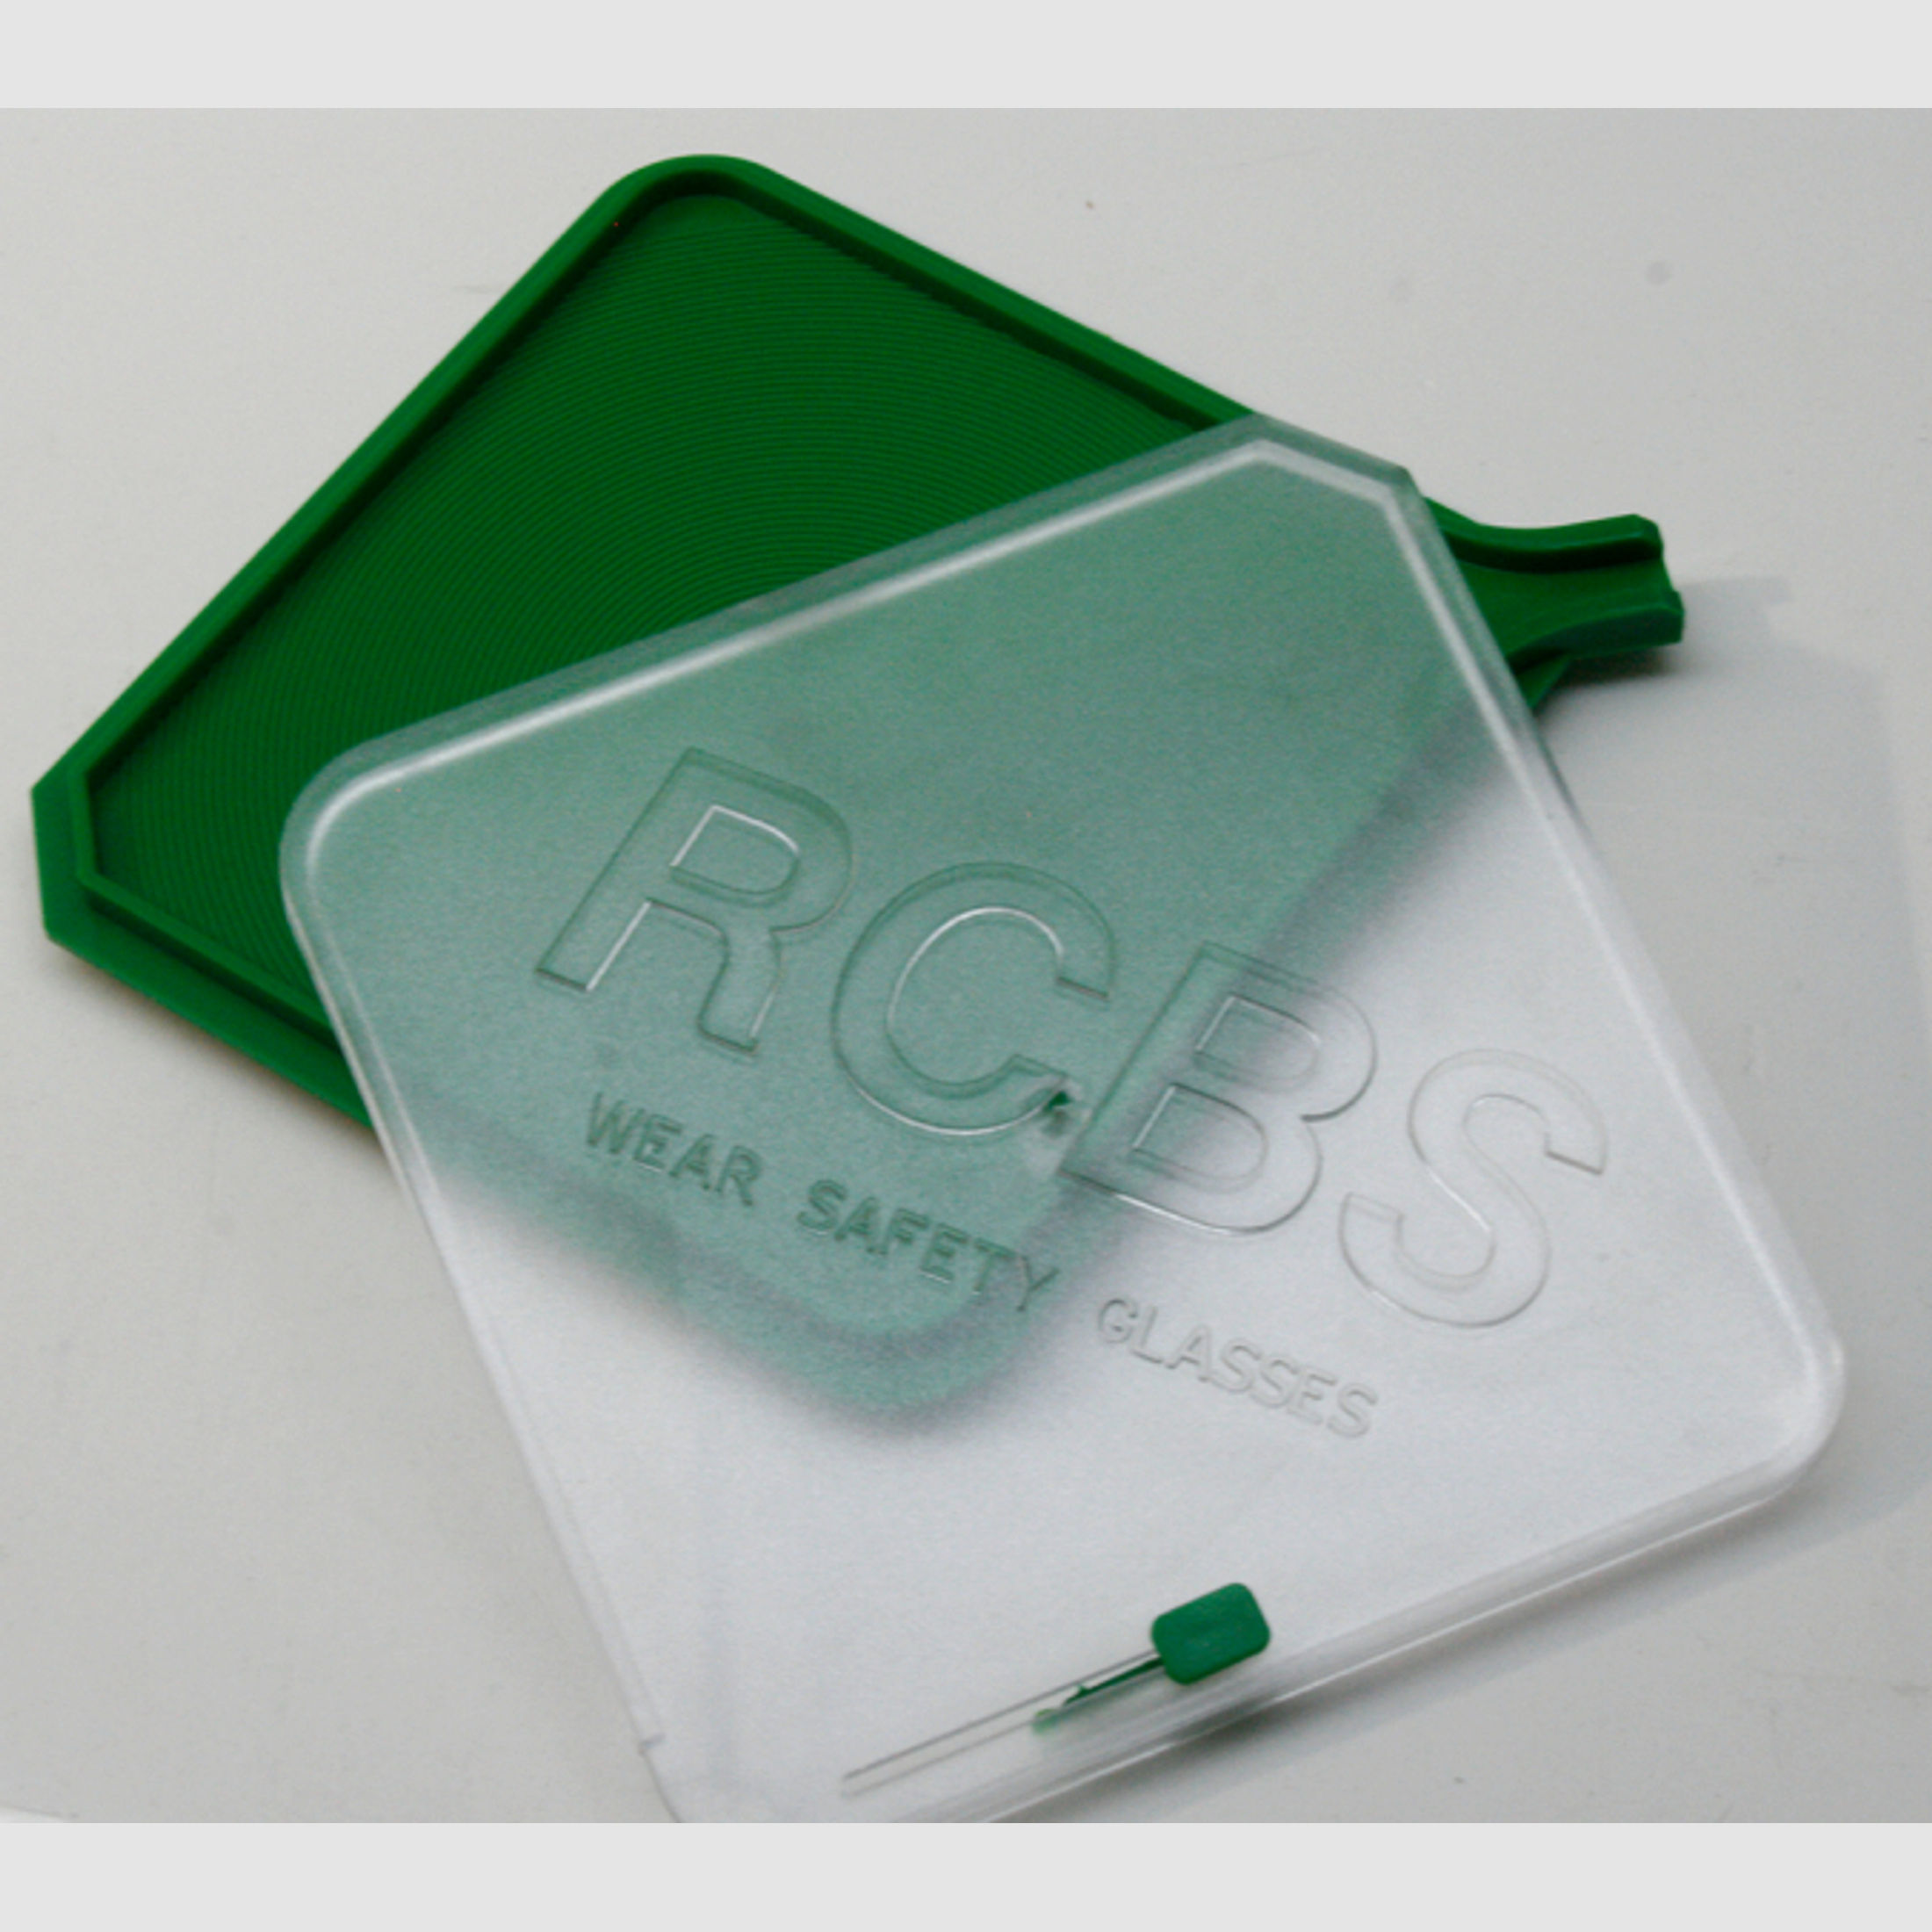 RCBS 90202 Universal Hand Priming Tool Tray & Deckel | Ersatzteil für RCBS Zünder-Setzgerät #90200